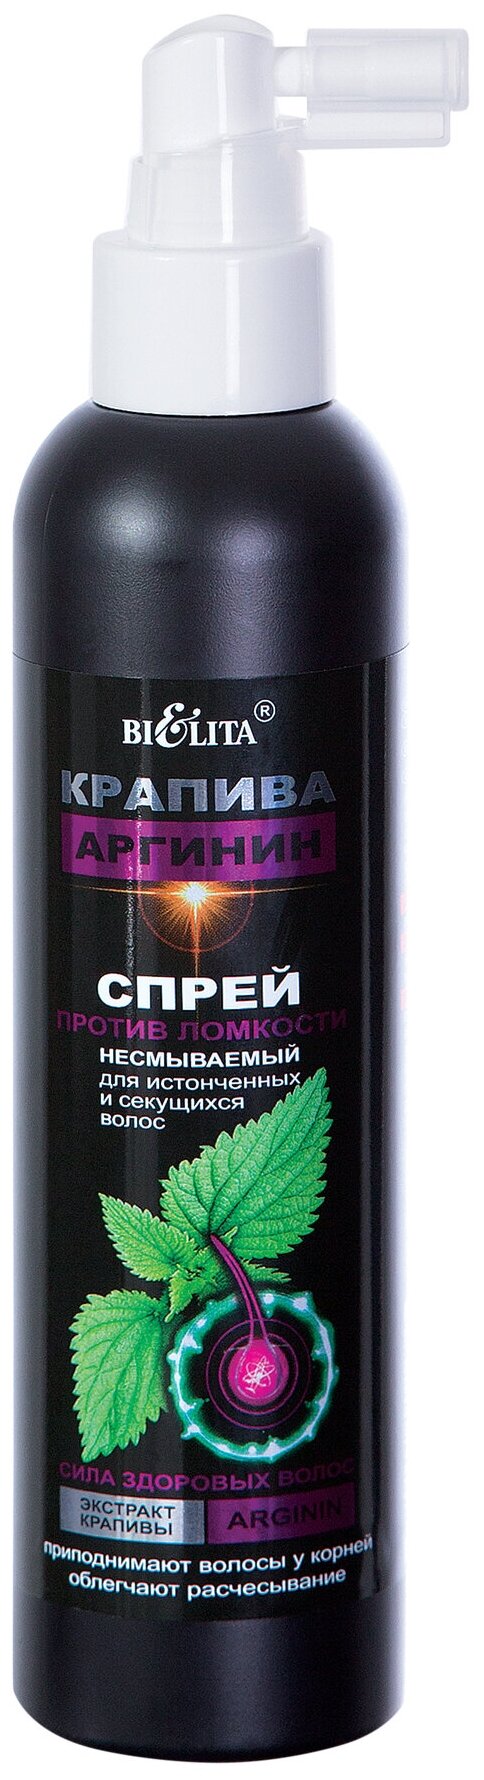 Стоит ли покупать Bielita КРАПИВА и АРГИНИН Спрей против ломкости несмываемый для истонченных и секущихся волос, 200 мл - 8 отзывов на Яндекс.Маркете